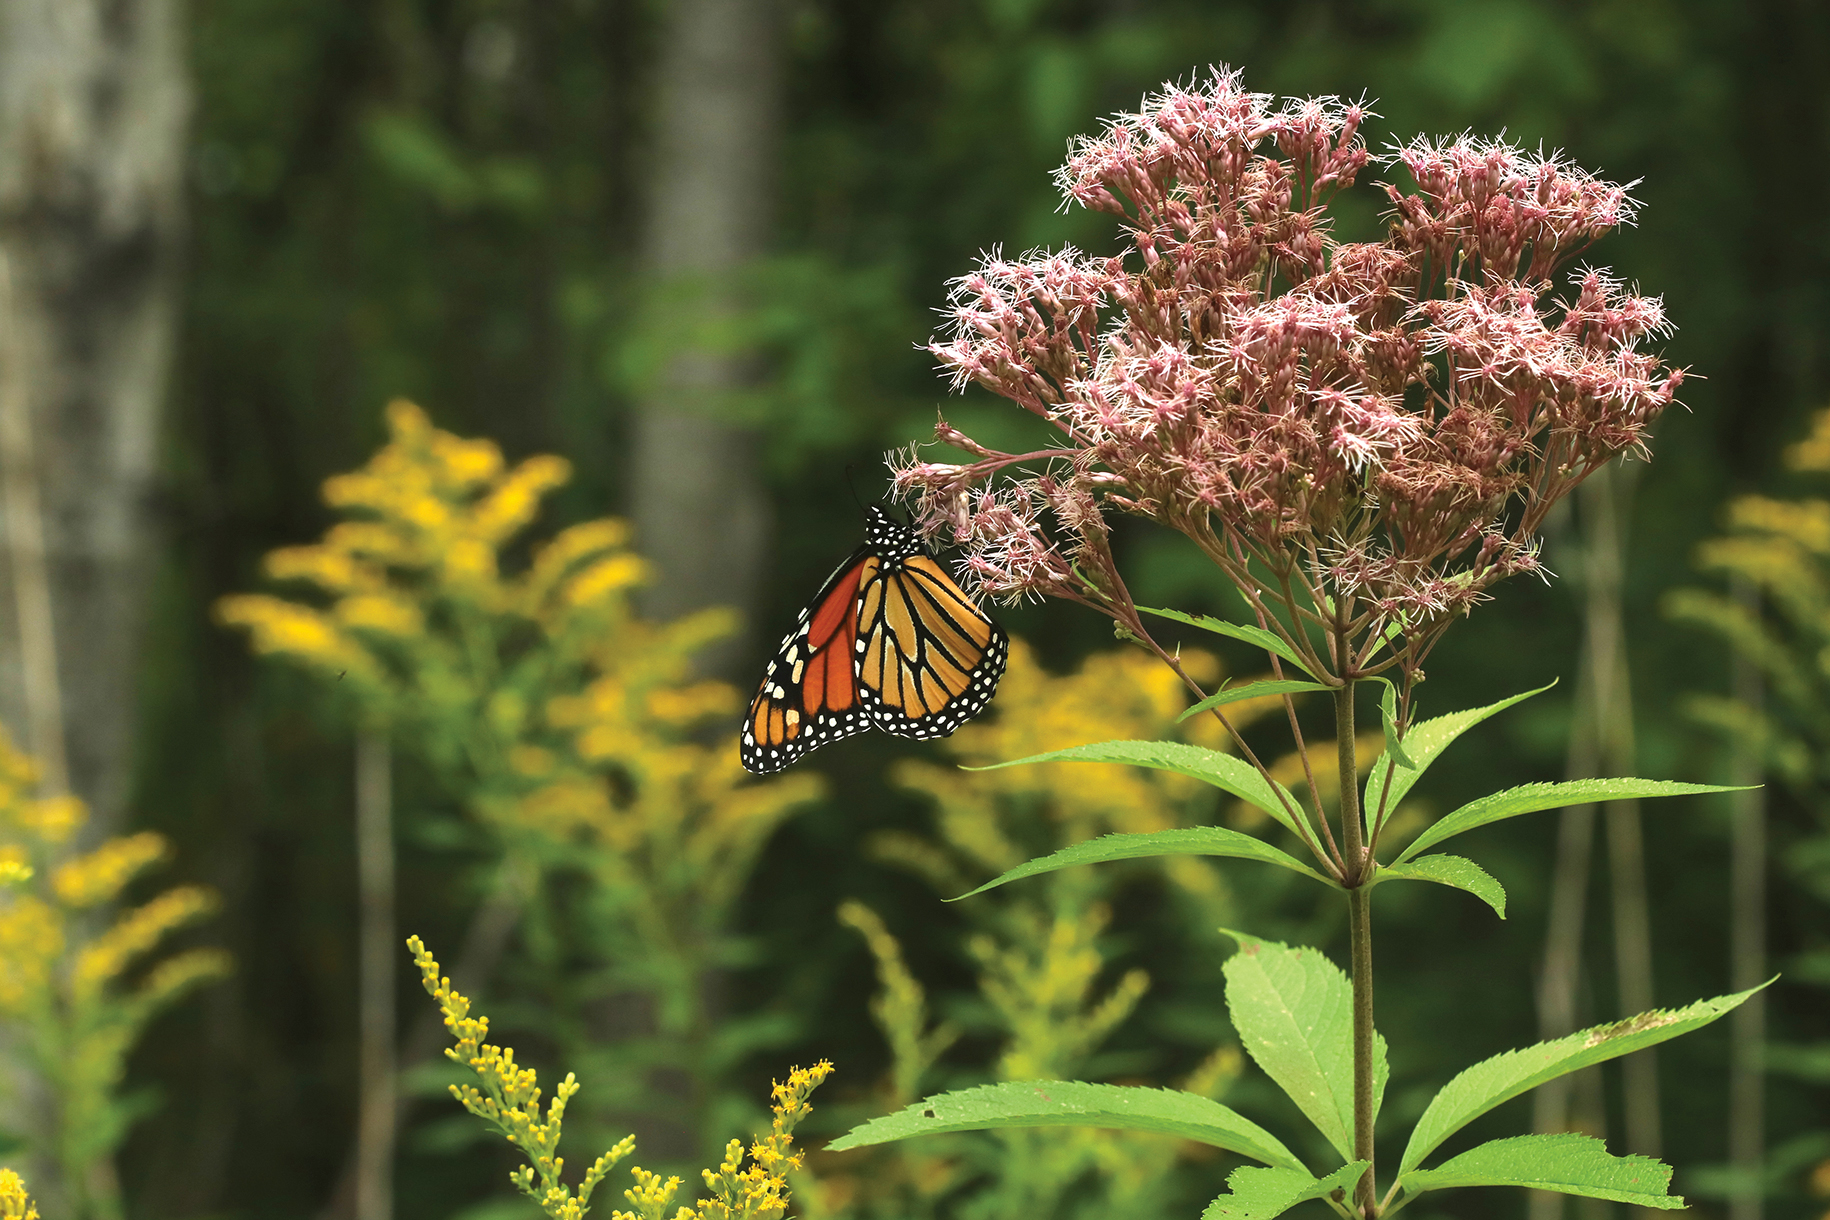 Au Canada, le papillon monarque bat de l’aile